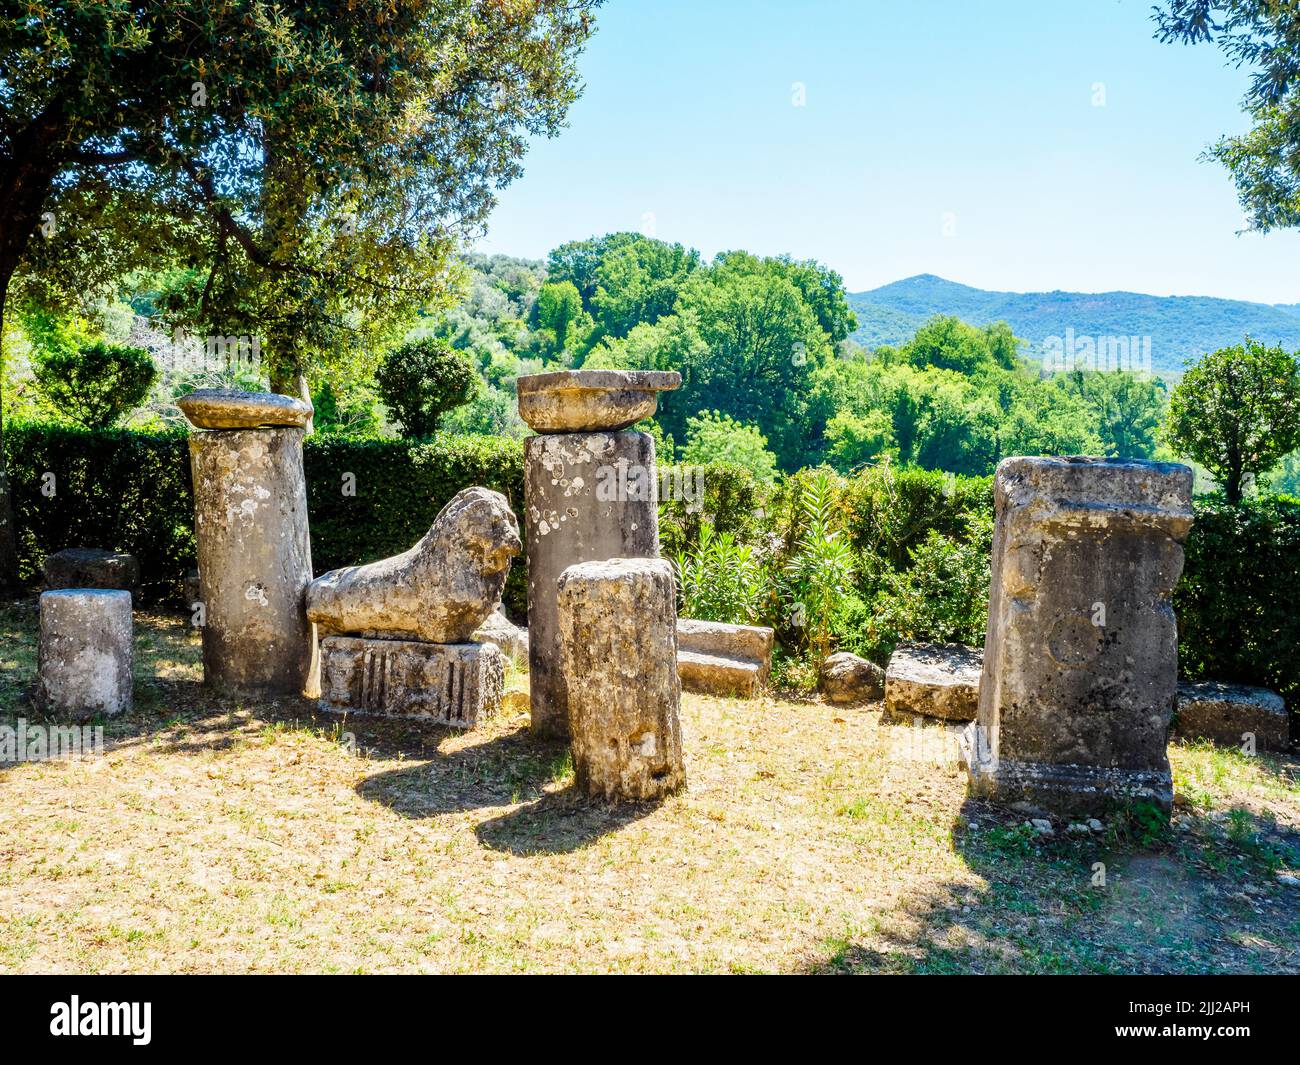 Ancient roman ruins in the garden of the Sanctuary of Santa Vittoria - Monteleone Sabino, Rieti, Italy Stock Photo